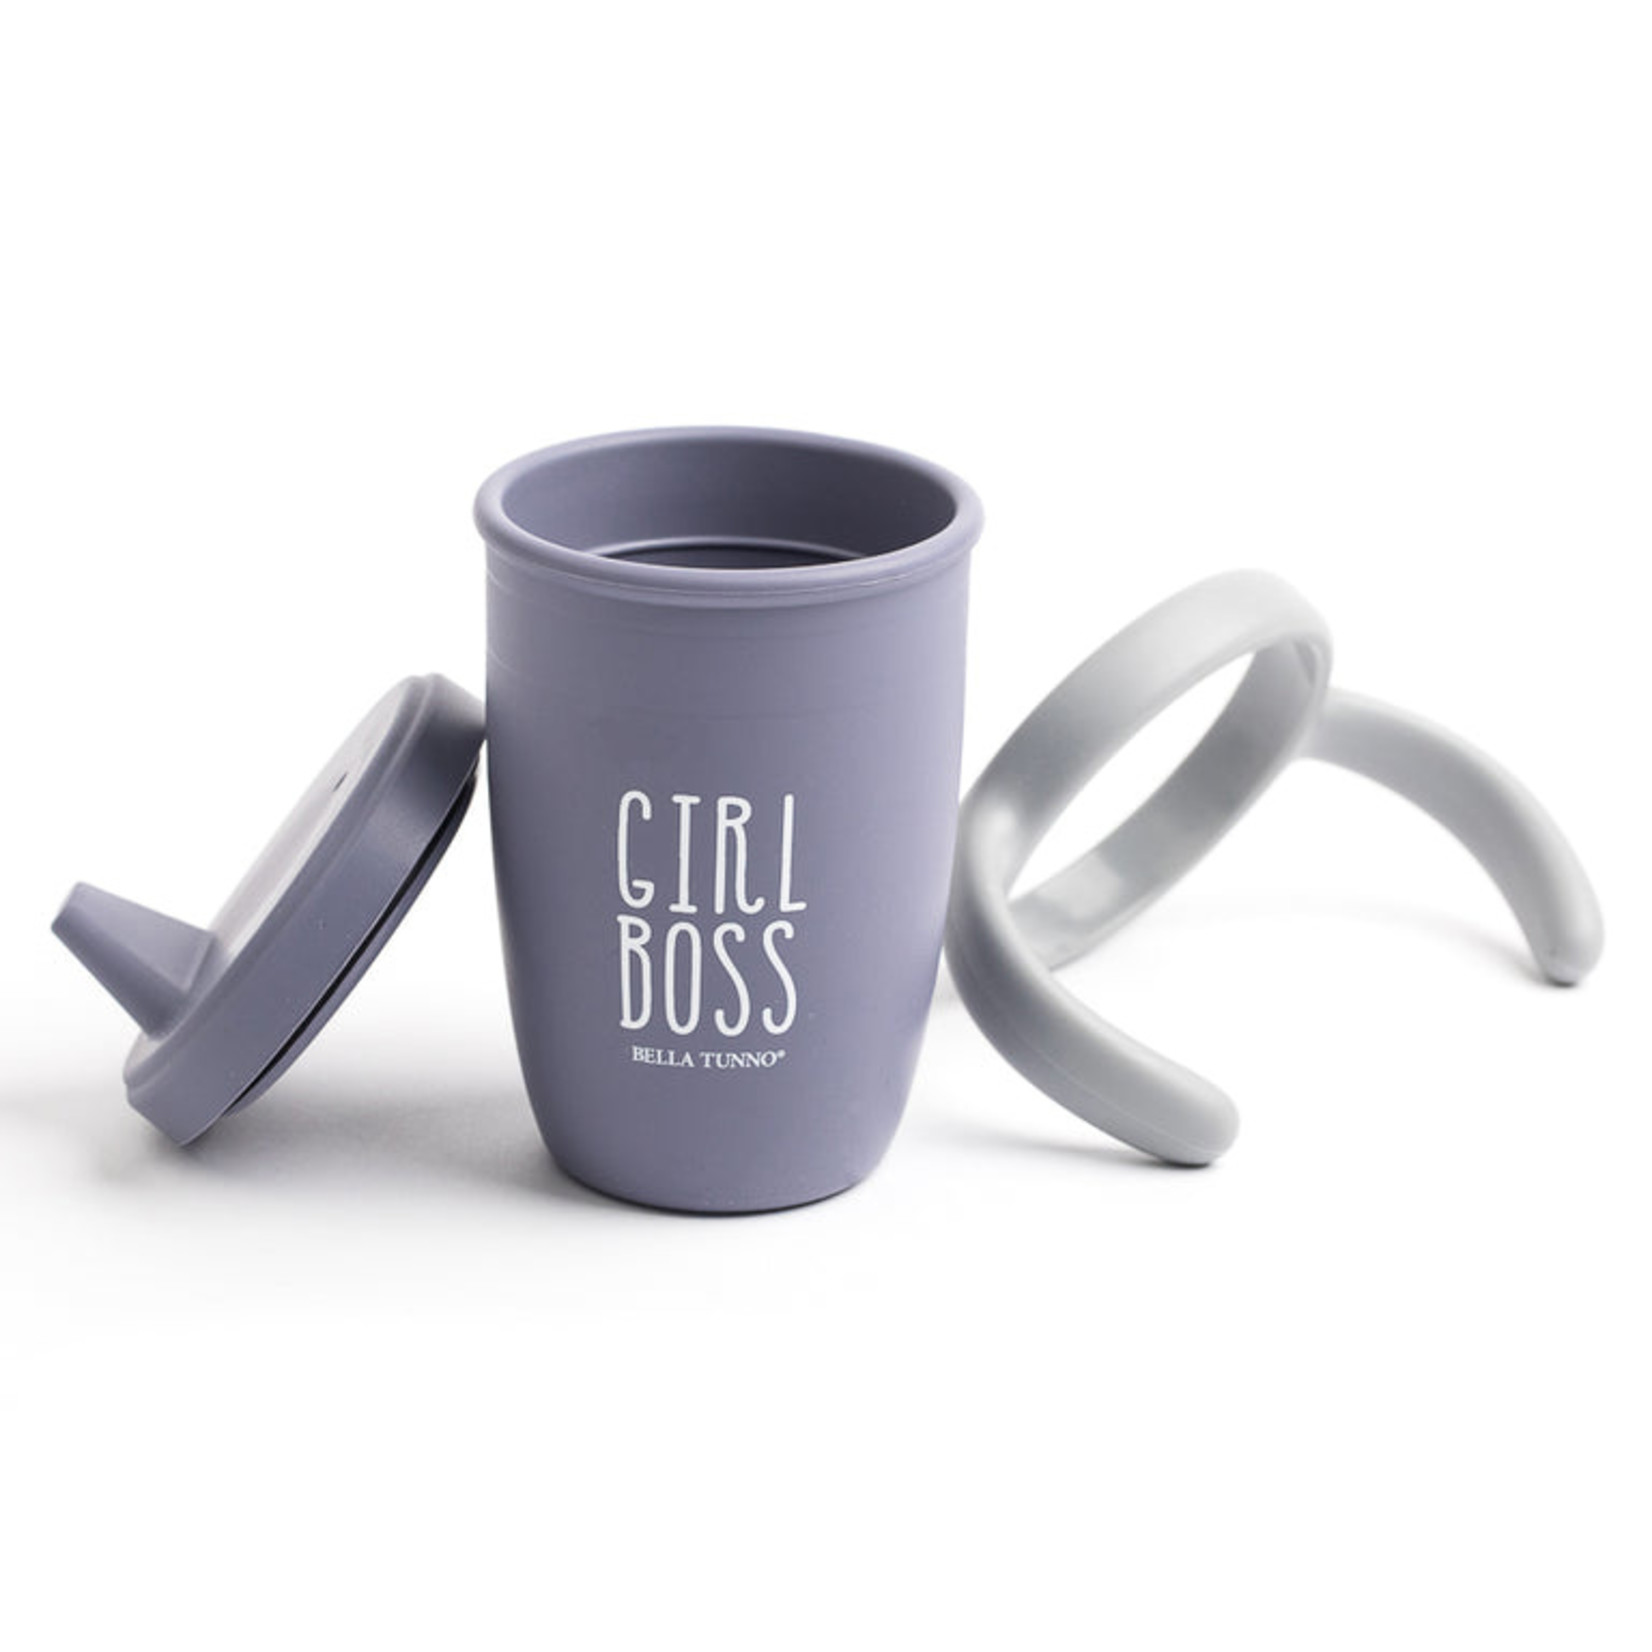 Bella Tunno Bella Tunno - Sippy Cup Girl Boss